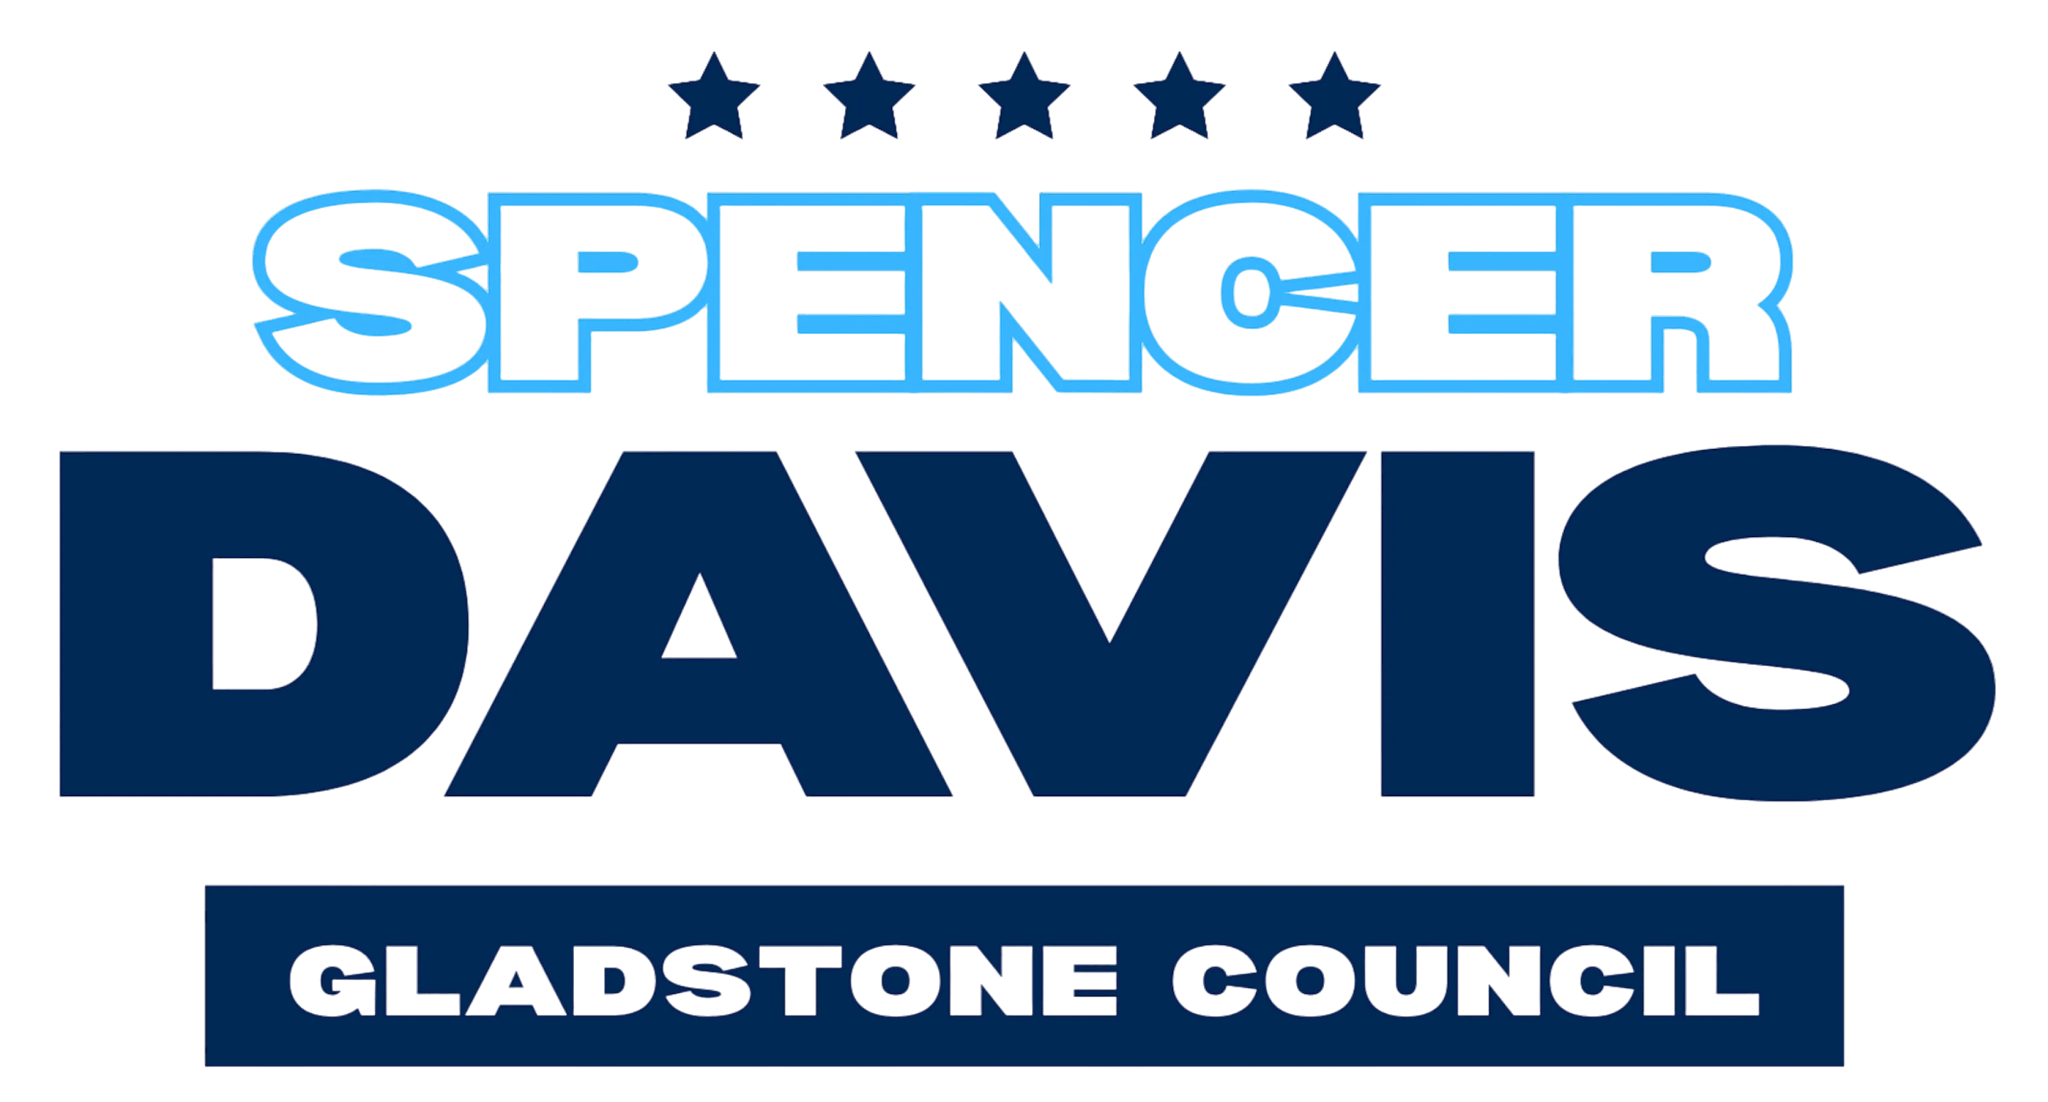 Spencer Davis For Gladstone logo